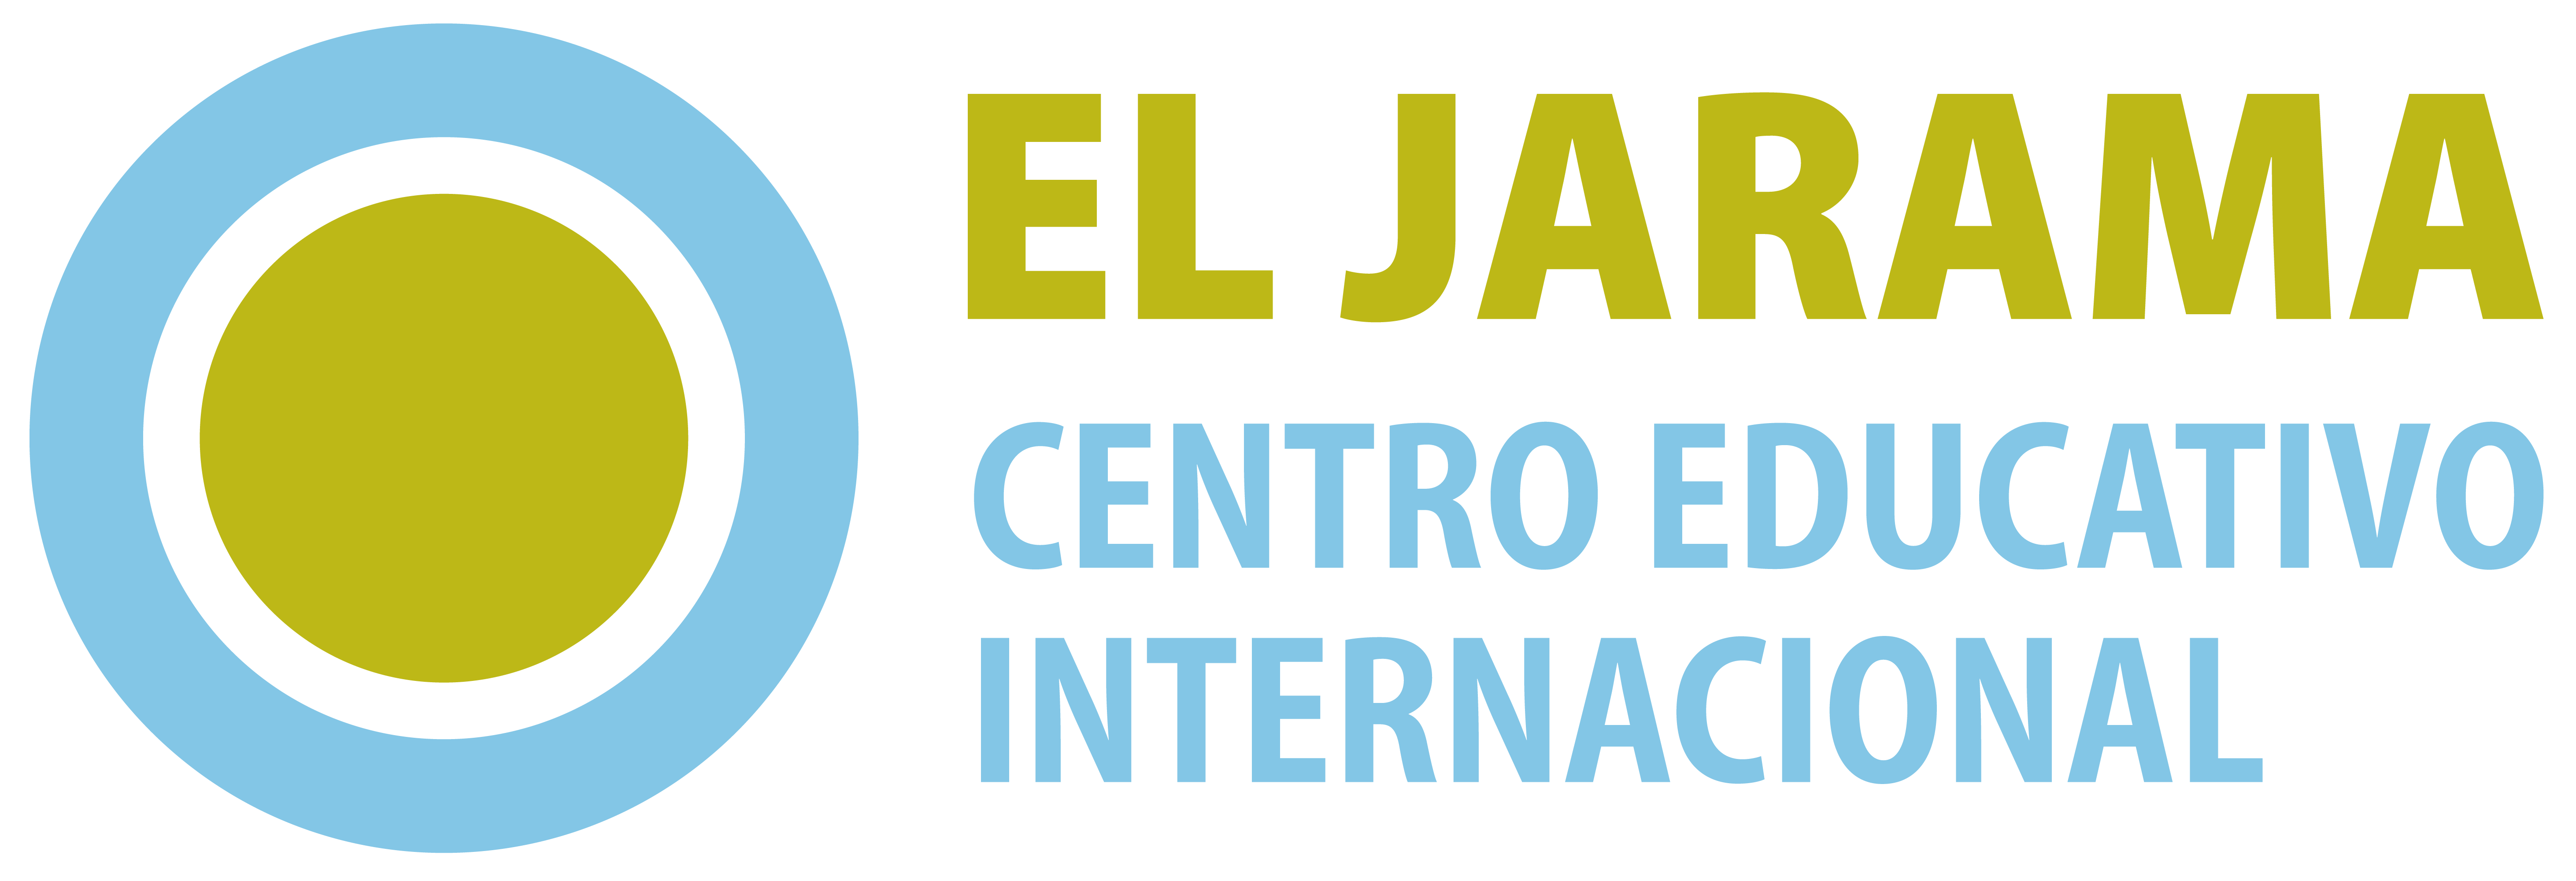 EL_JARAMA_Centro_Educativo_Internacional_color